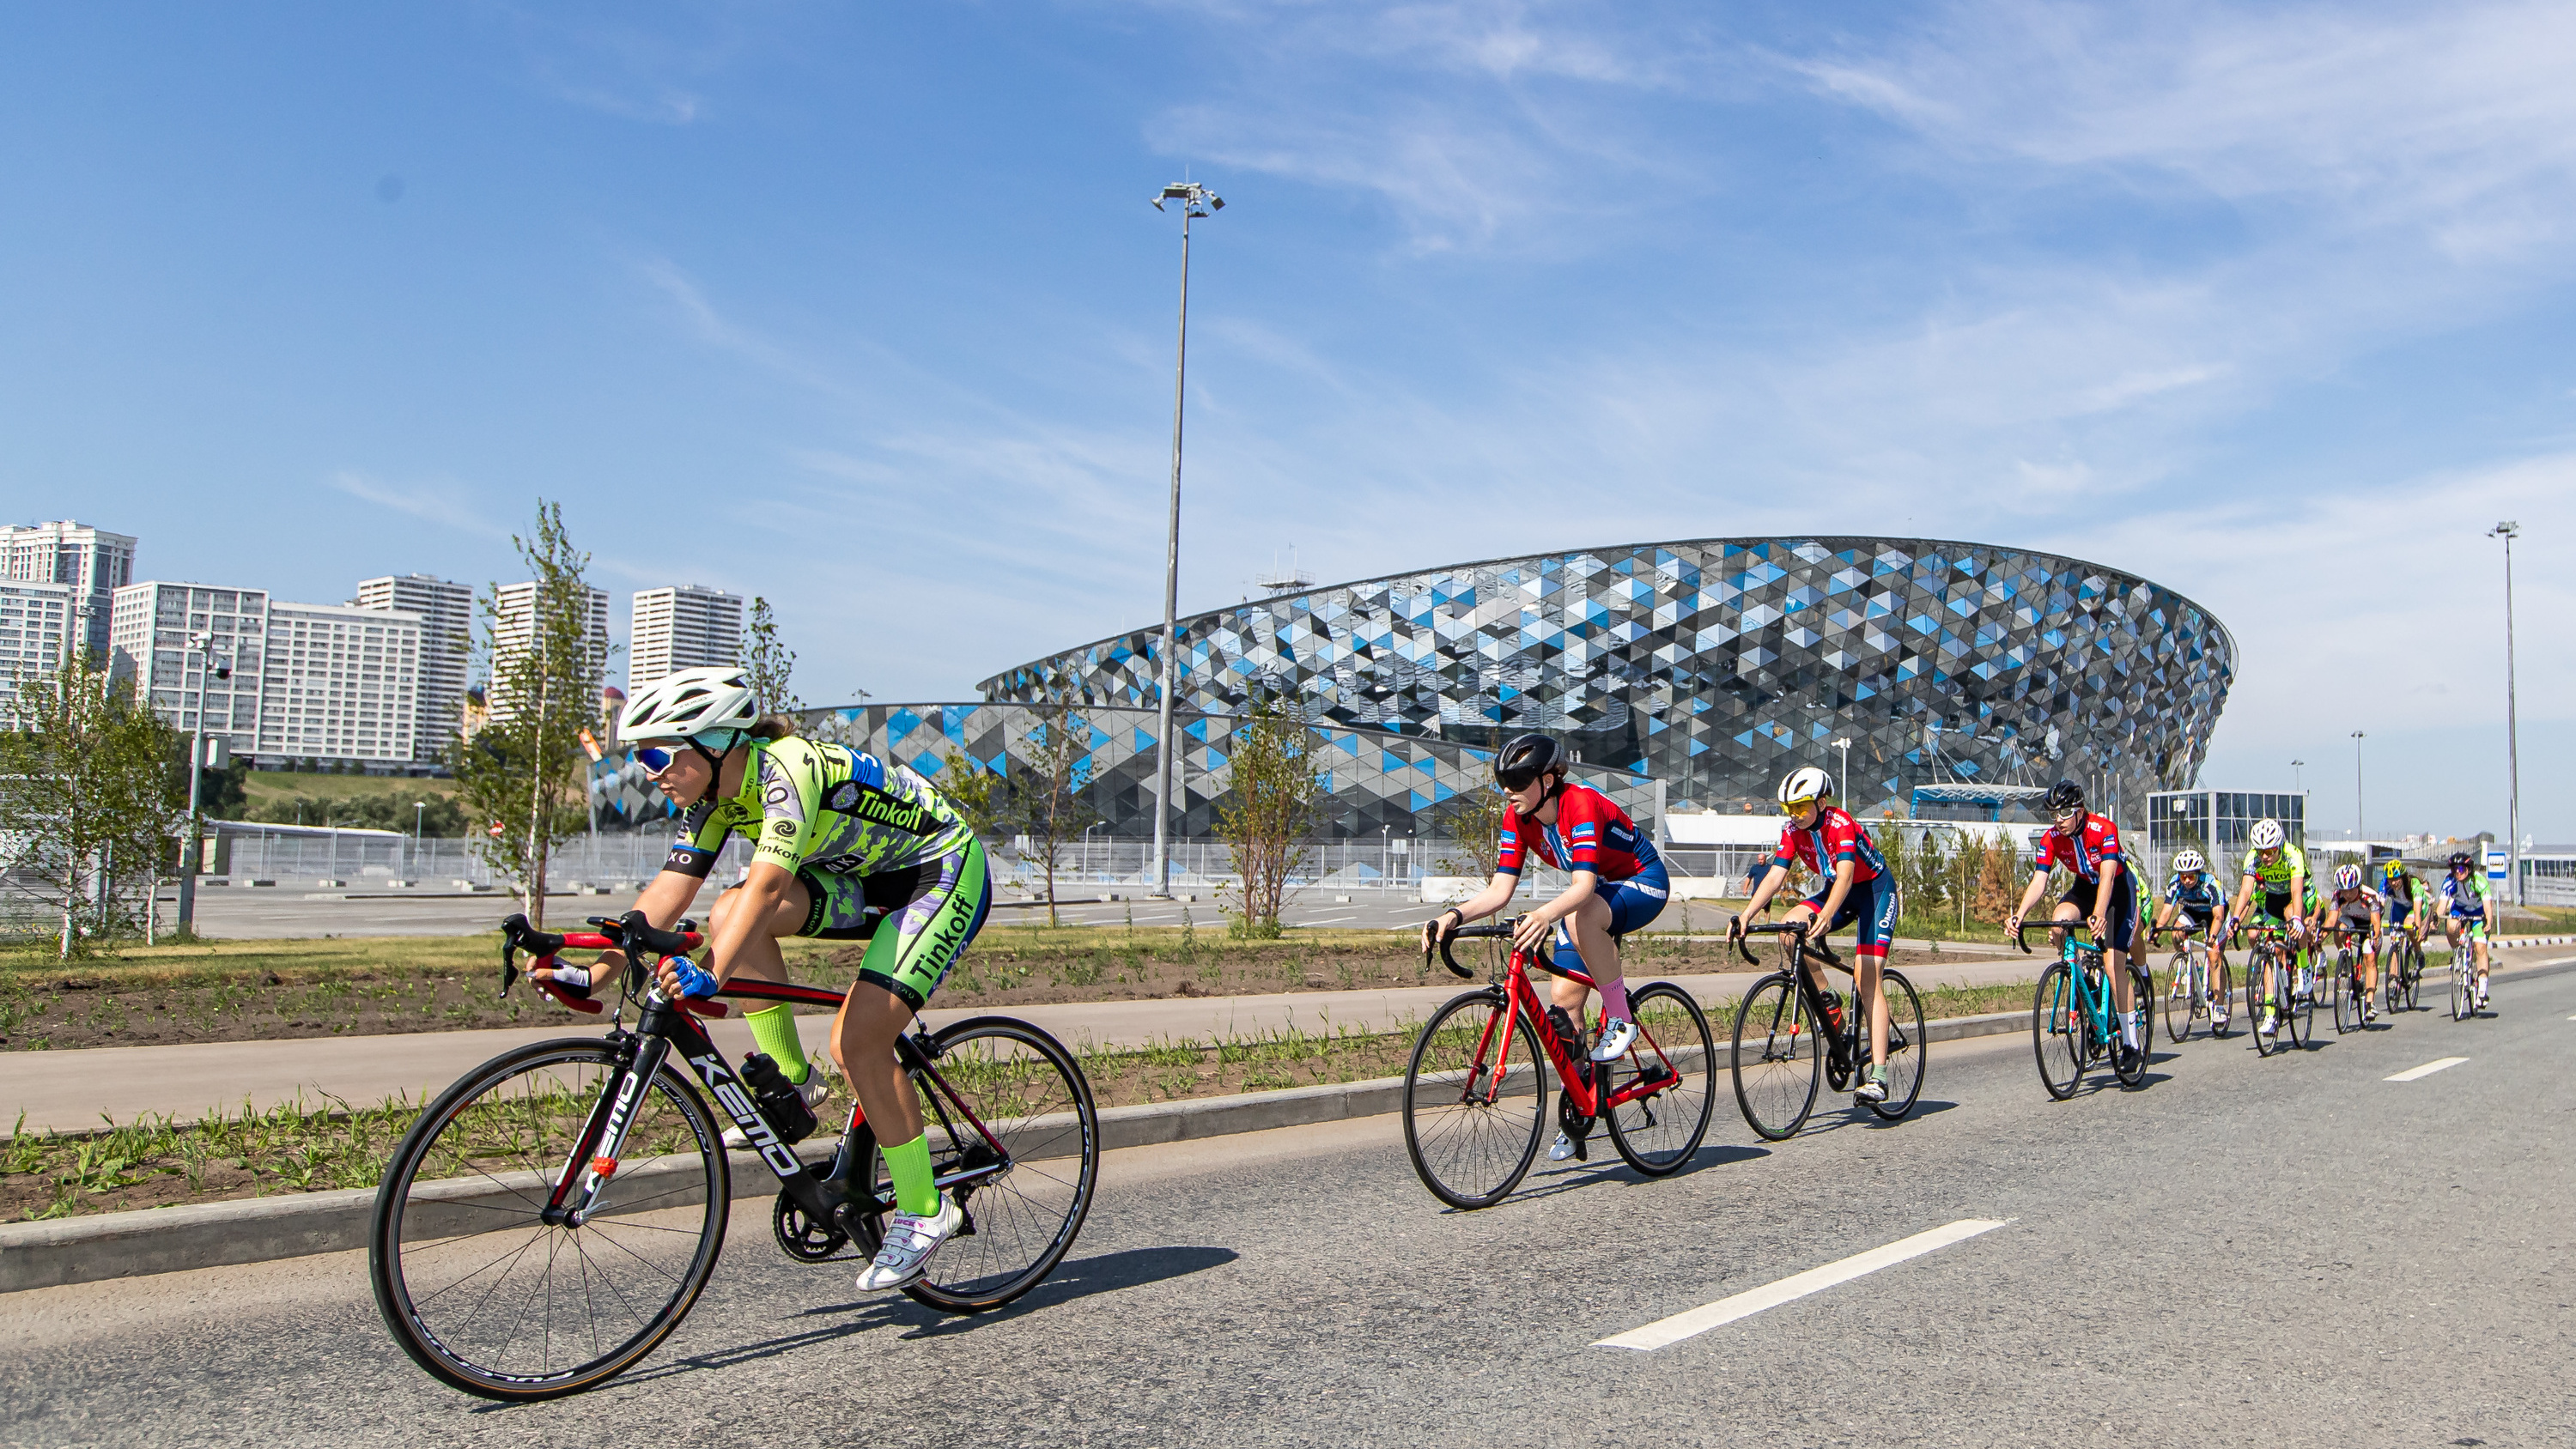 Главное — не упасть: 10 захватывающих снимков с велогонки в парке «Арена», куда съехалась толпа спортсменов